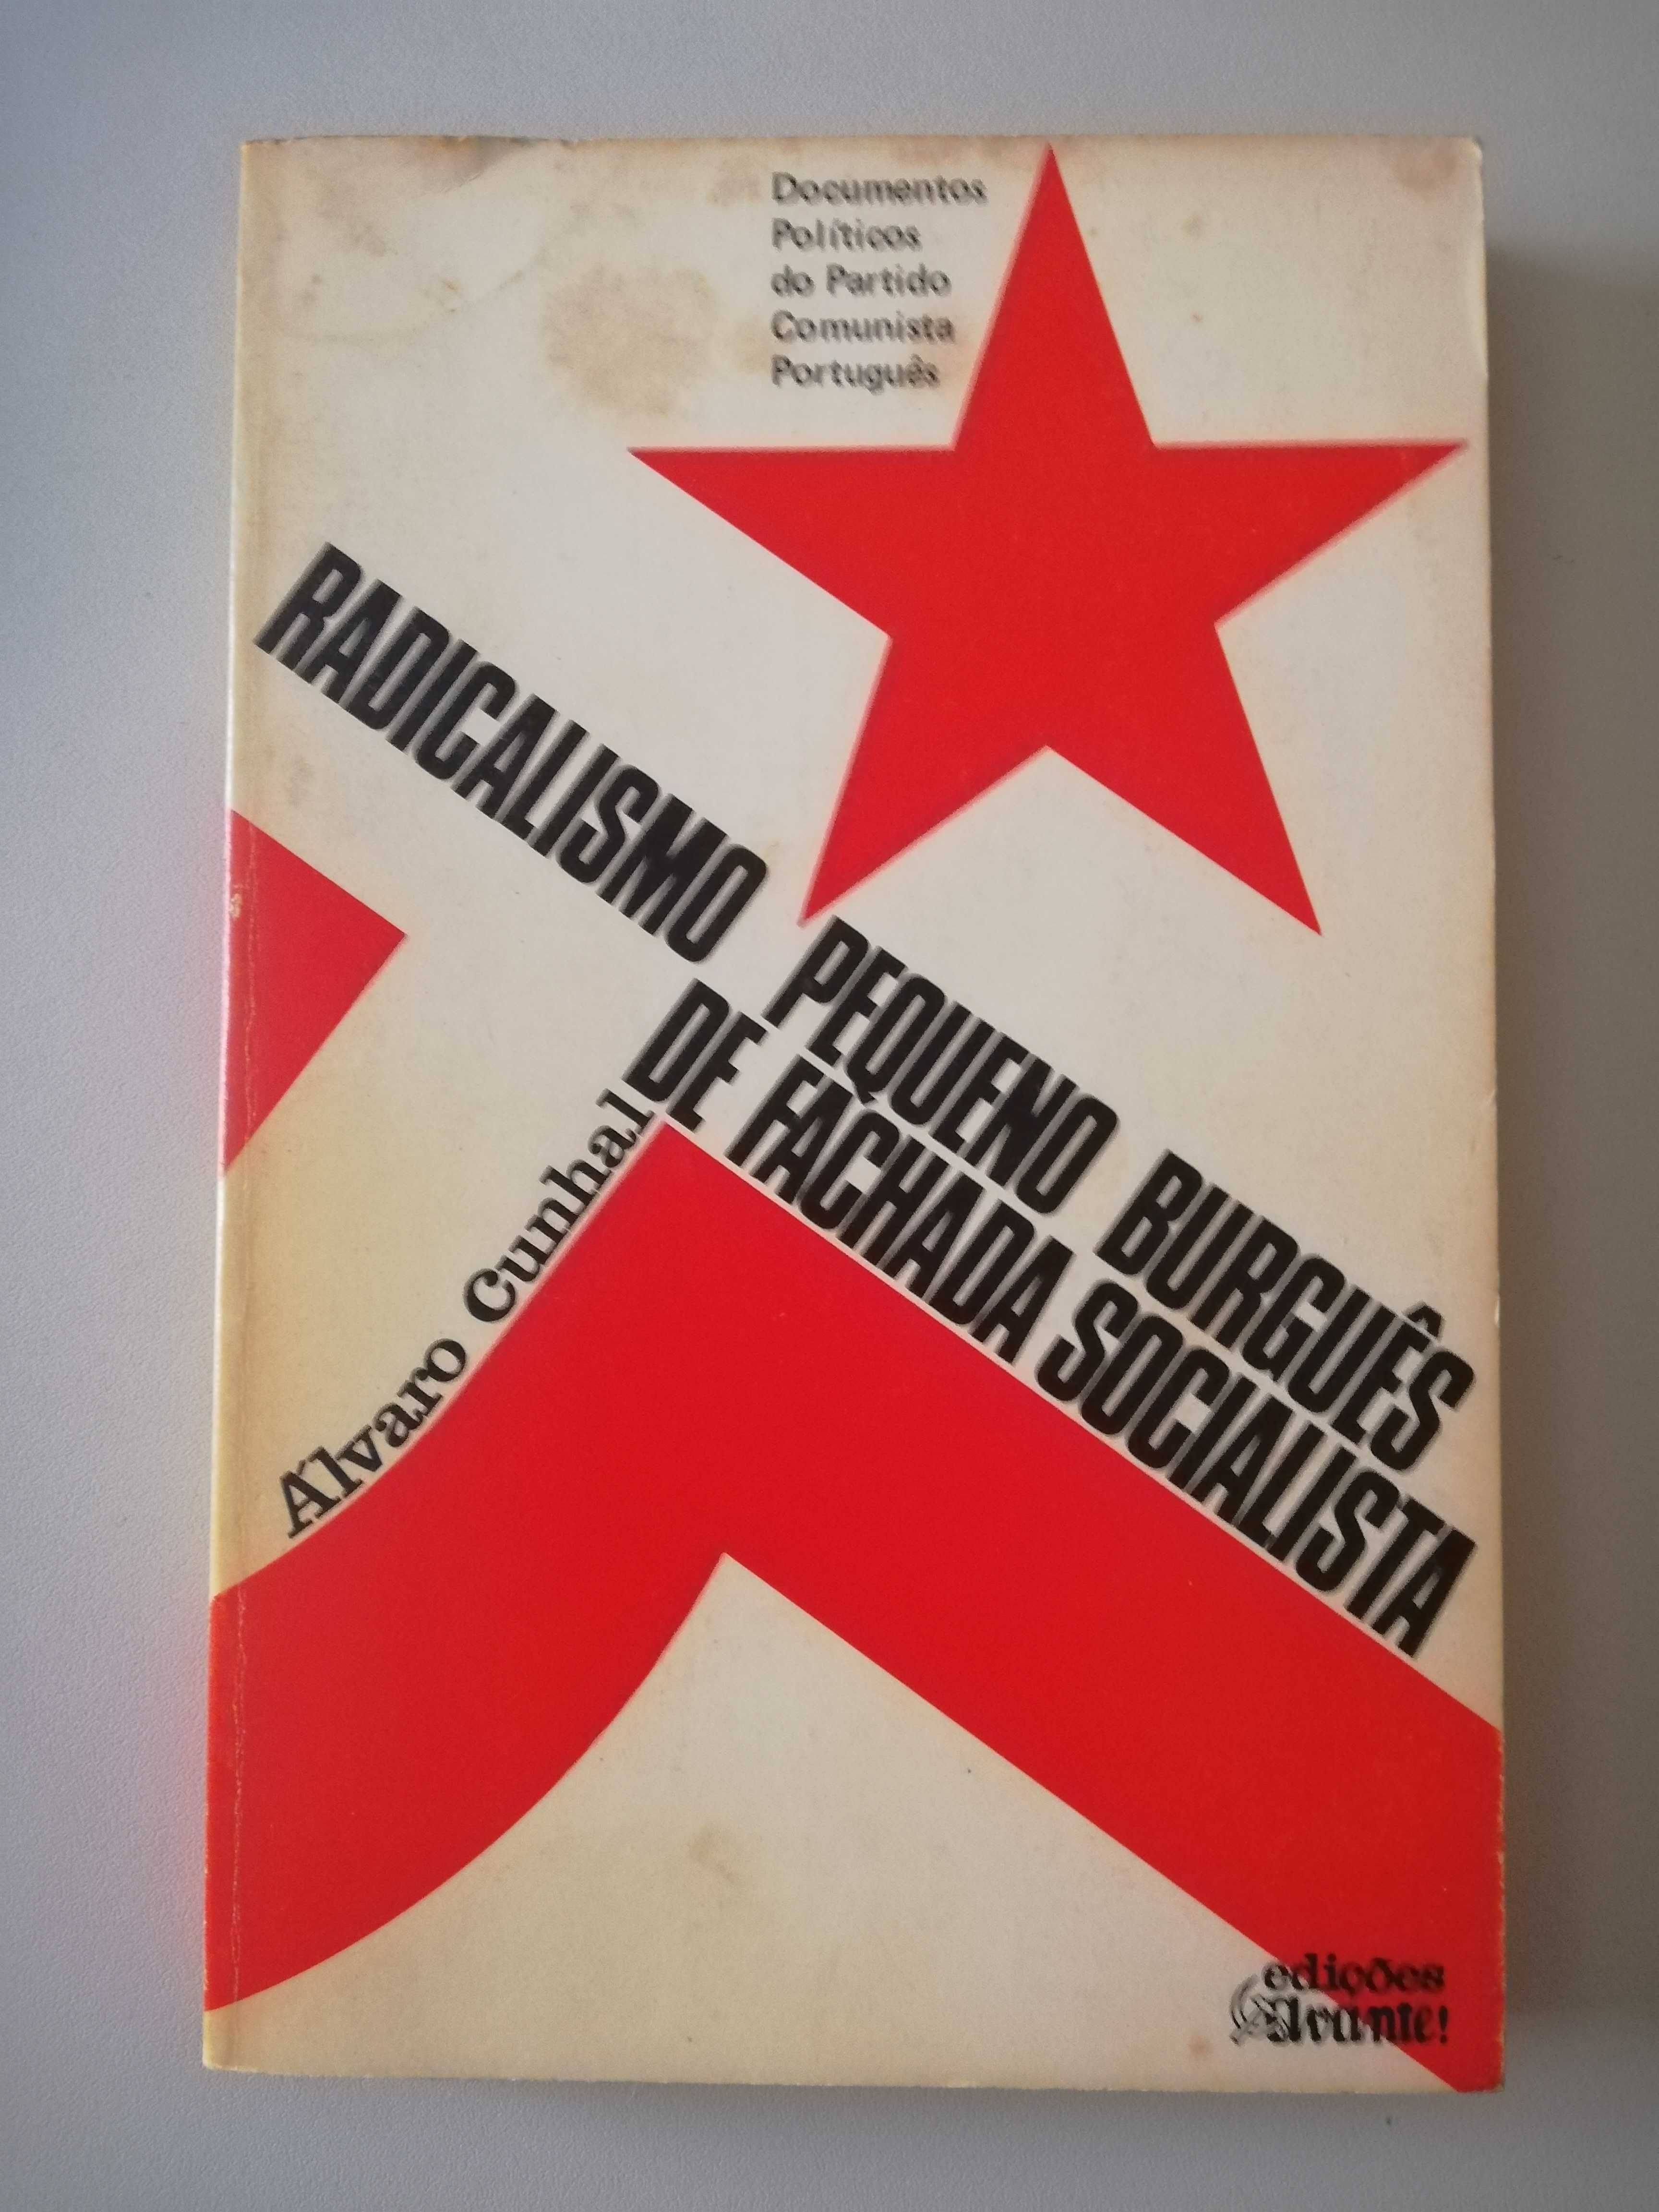 Radicalismo Pequeno Burguês de Fachada Socialista